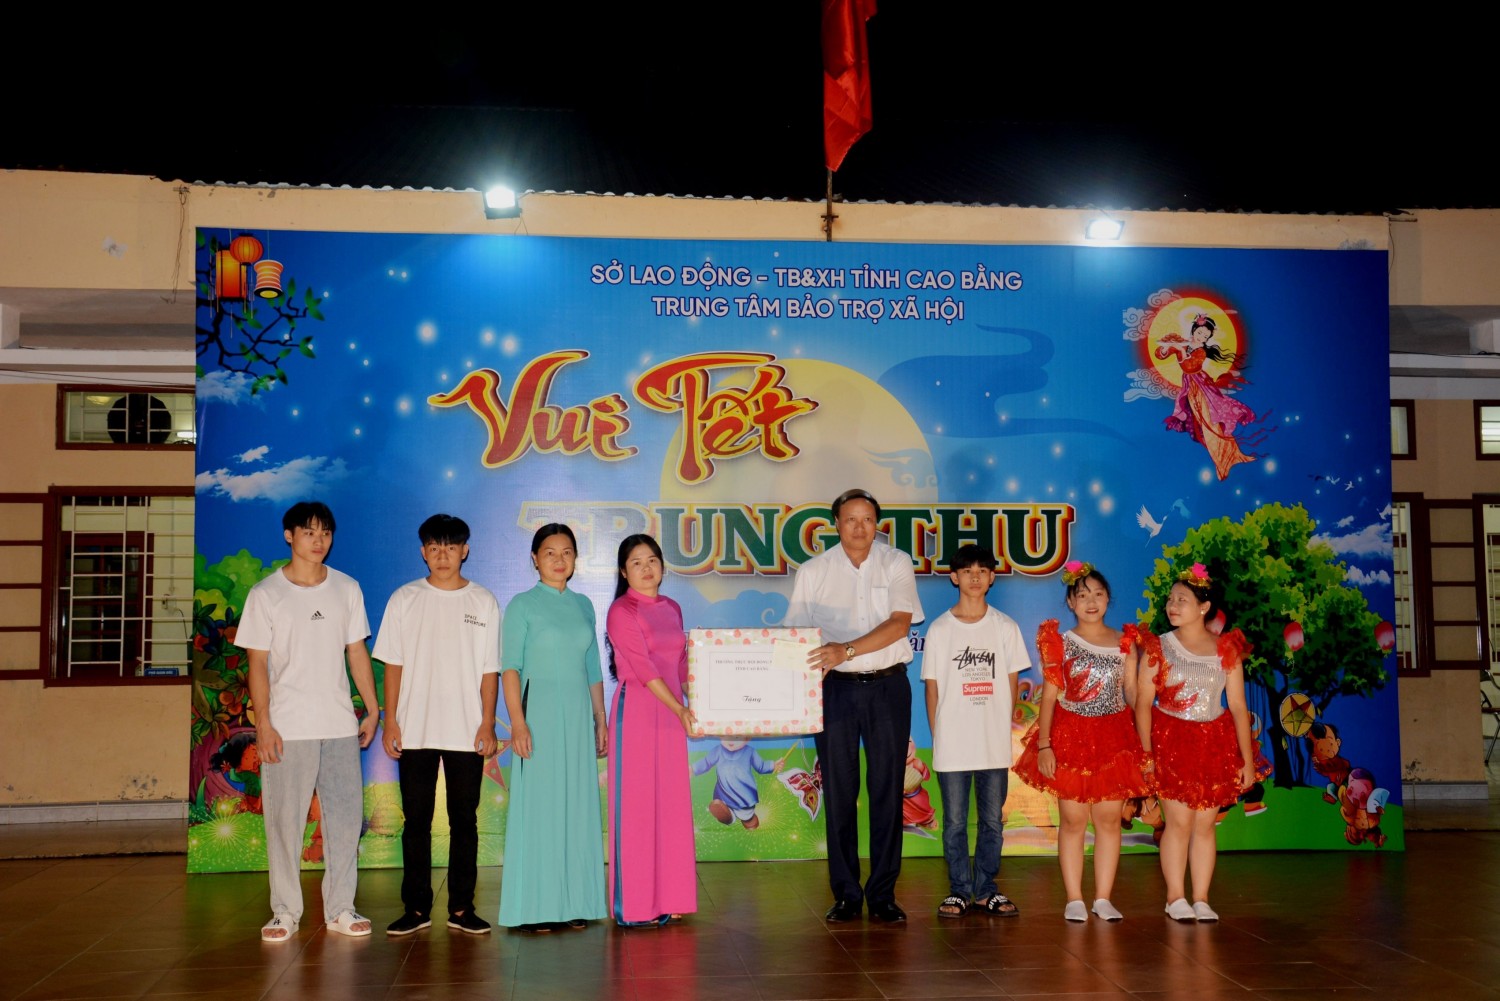 Phó Chủ tịch HĐND tỉnh Hoàng Văn Thạch tặng quà các cháu thiếu nhi tại Trung tâm Bảo trợ xã hội tỉnh